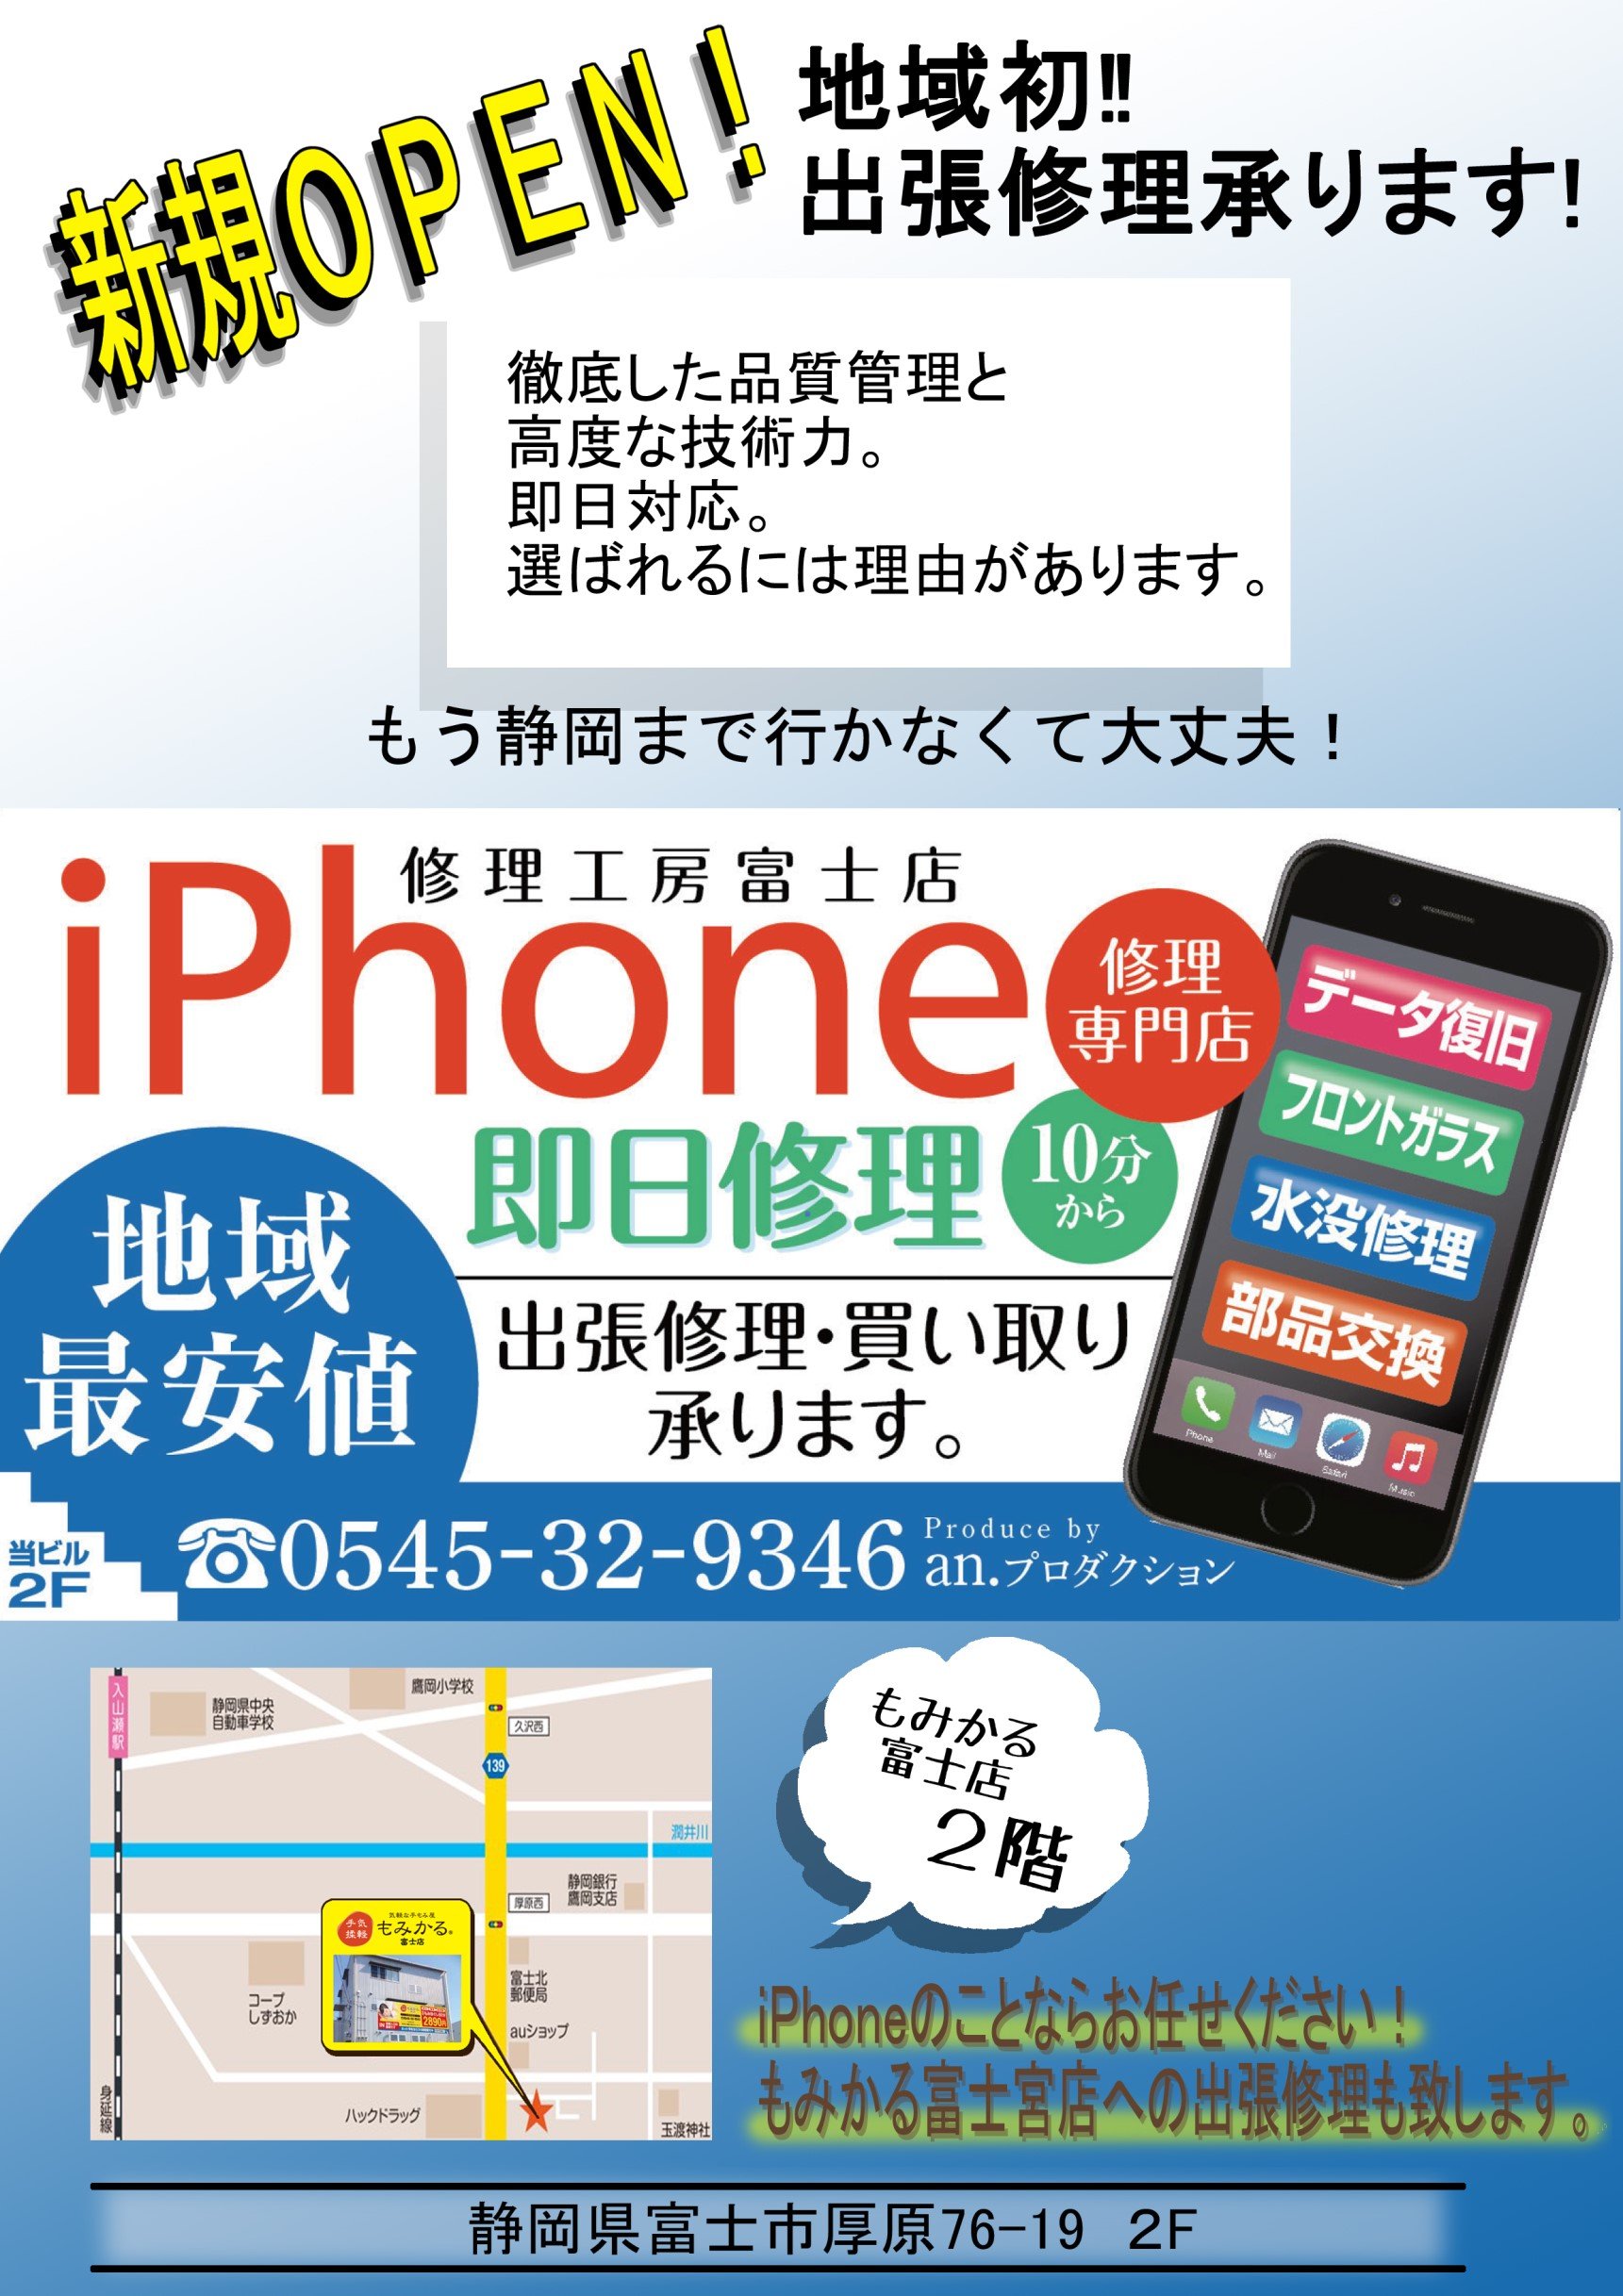 静岡県富士市厚原のiPhone修理店です。 画面割れからバッテリー交換、 不具合や故障等があればお気軽にご相談くださいませ。iPhoneに限らずスマホの画面のガラスコーティングも始めました。お問い合わせは「0545-32-9346」 「090-7792-8607」